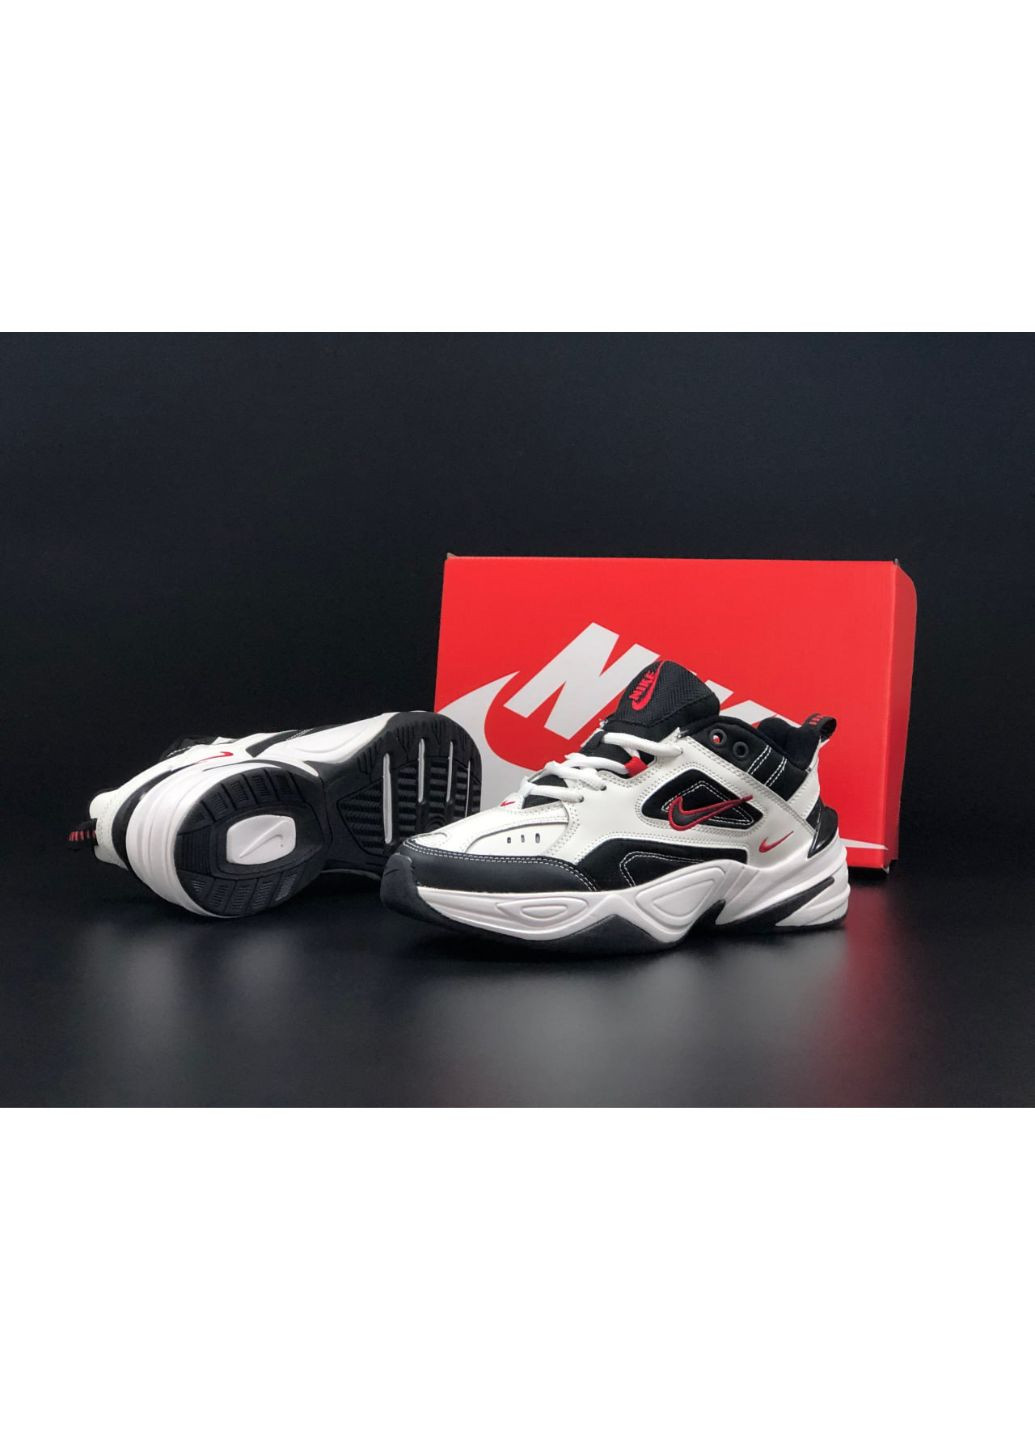 Черно-белые демисезонные мужские кроссовки белые с черным\красным «no name» Nike M2k Tekno